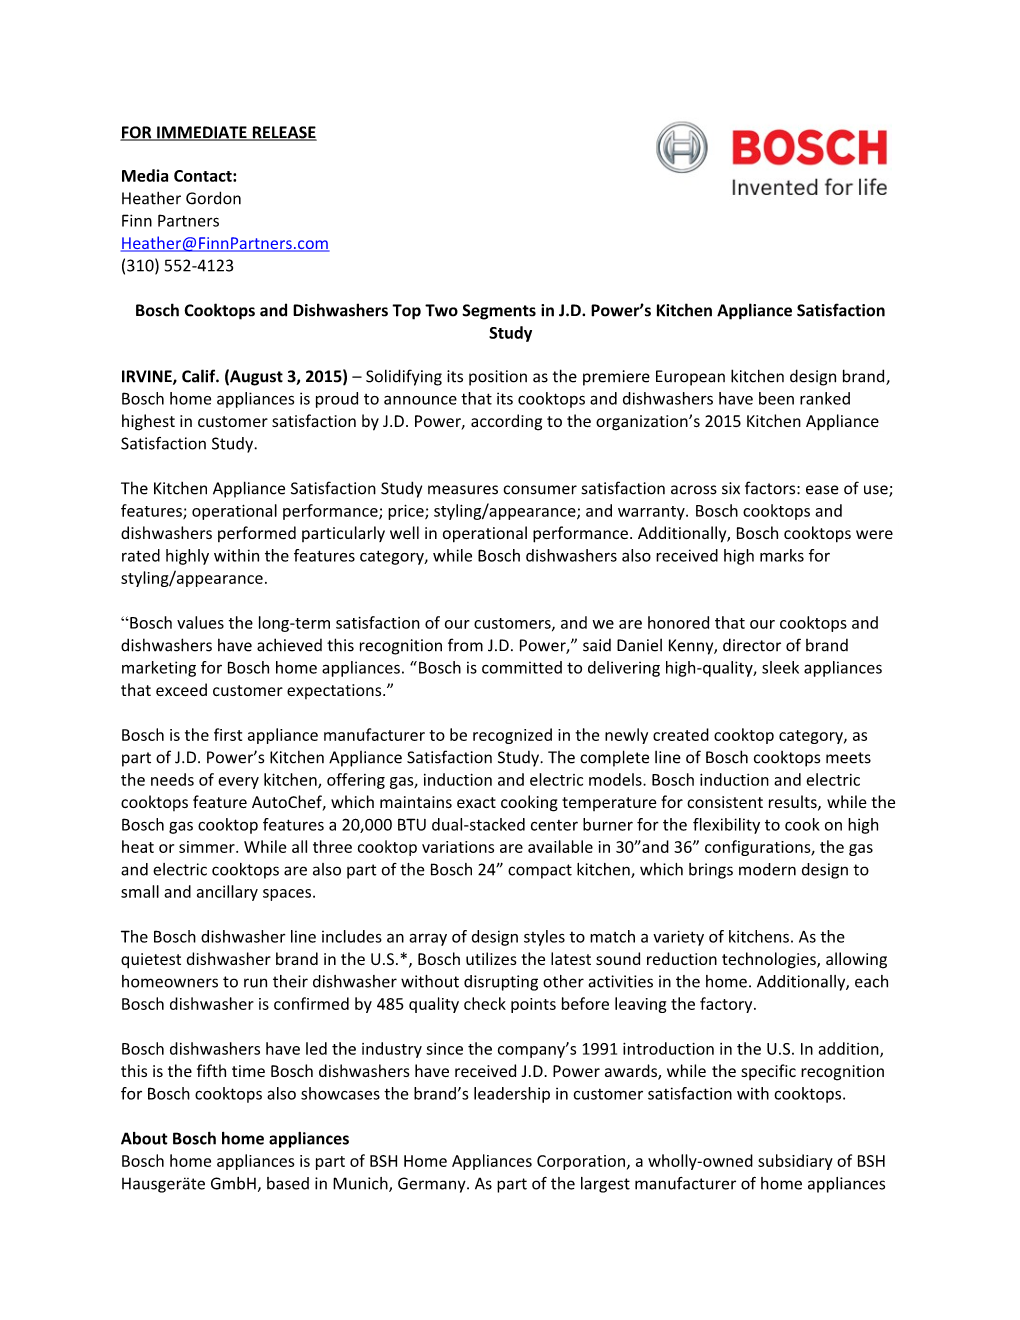 Bosch 2015 J.D. Power Ranking Press Release (265739)